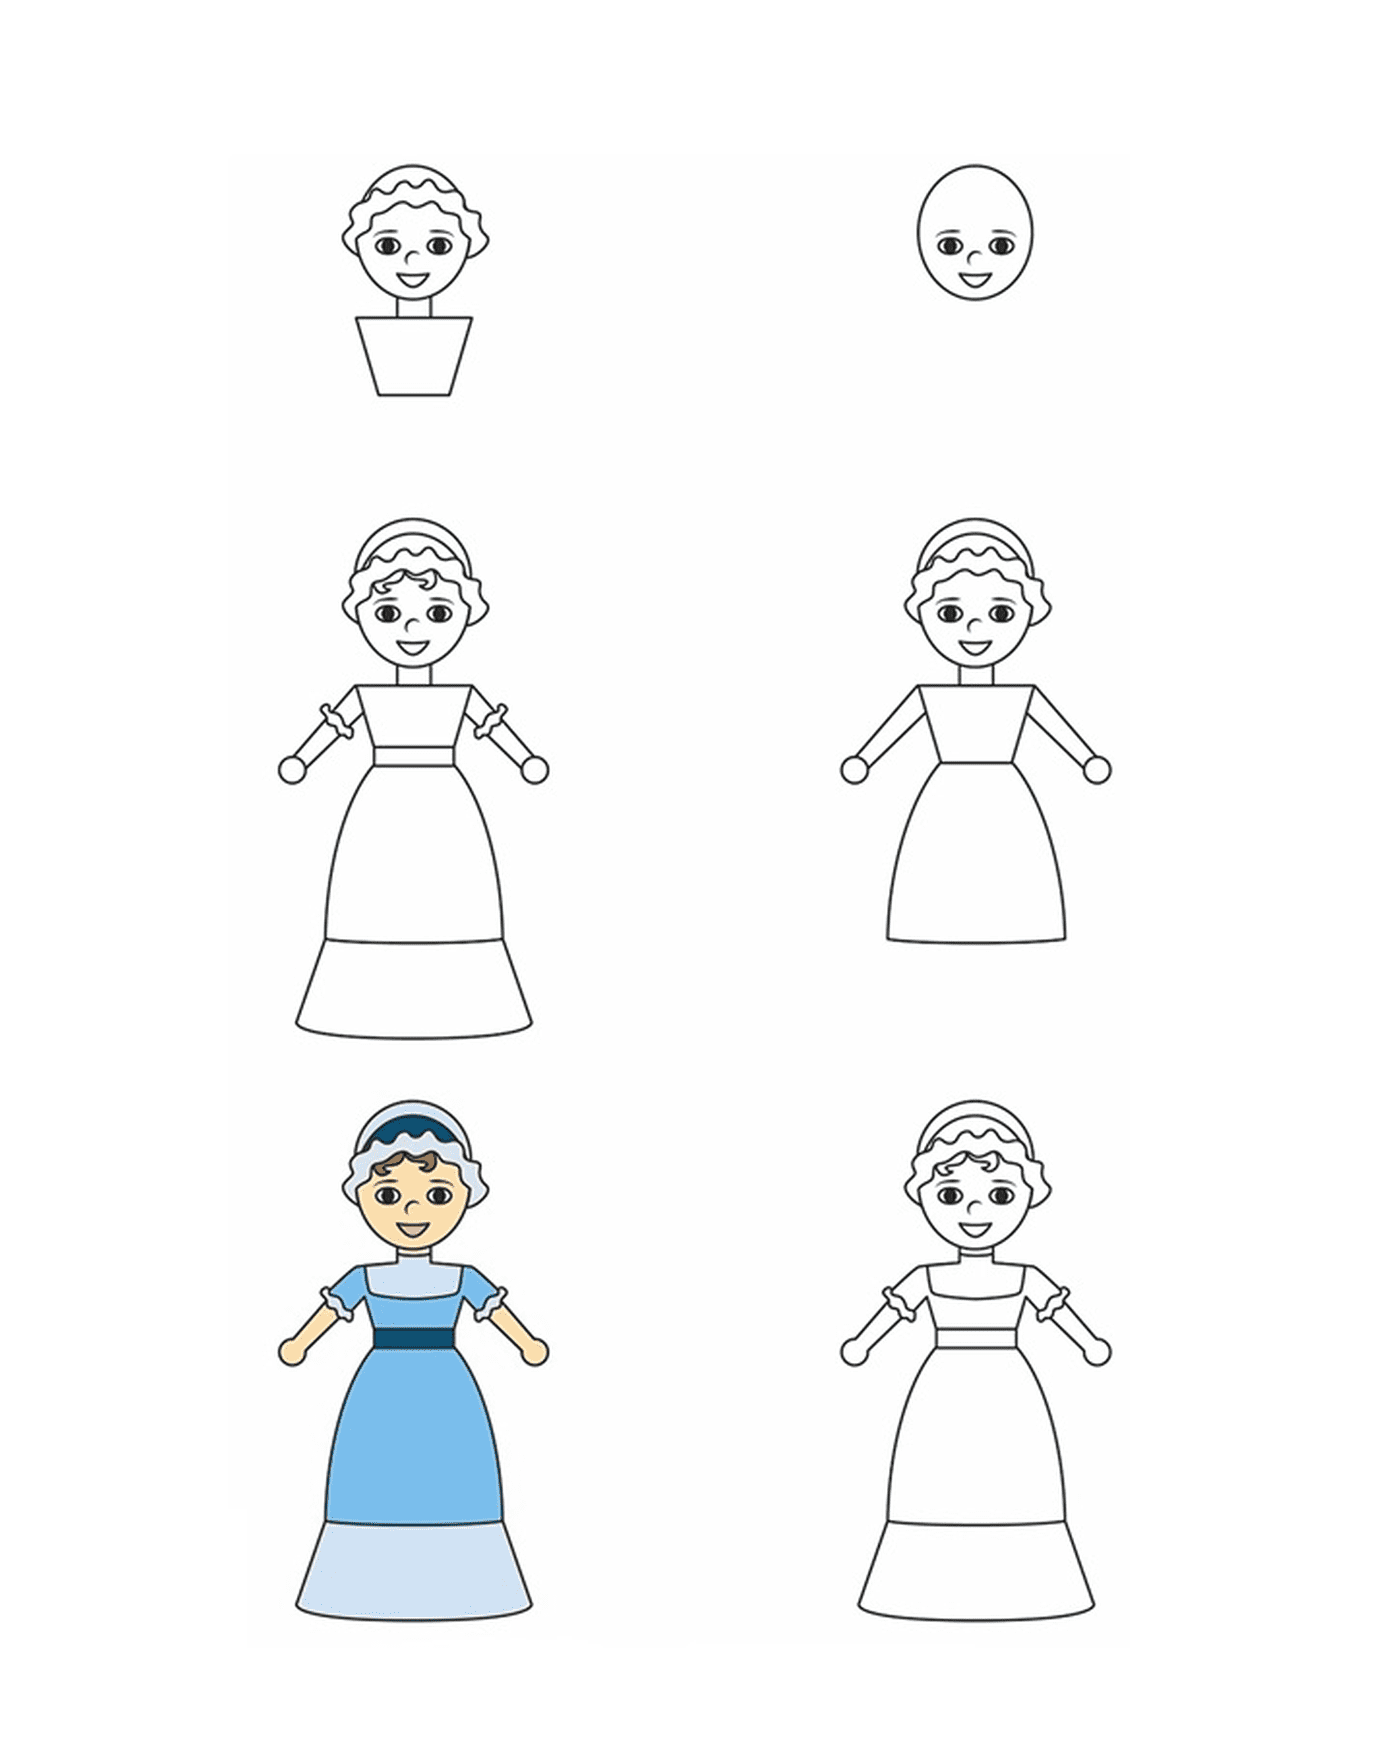  Cómo dibujar una princesa paso a paso 